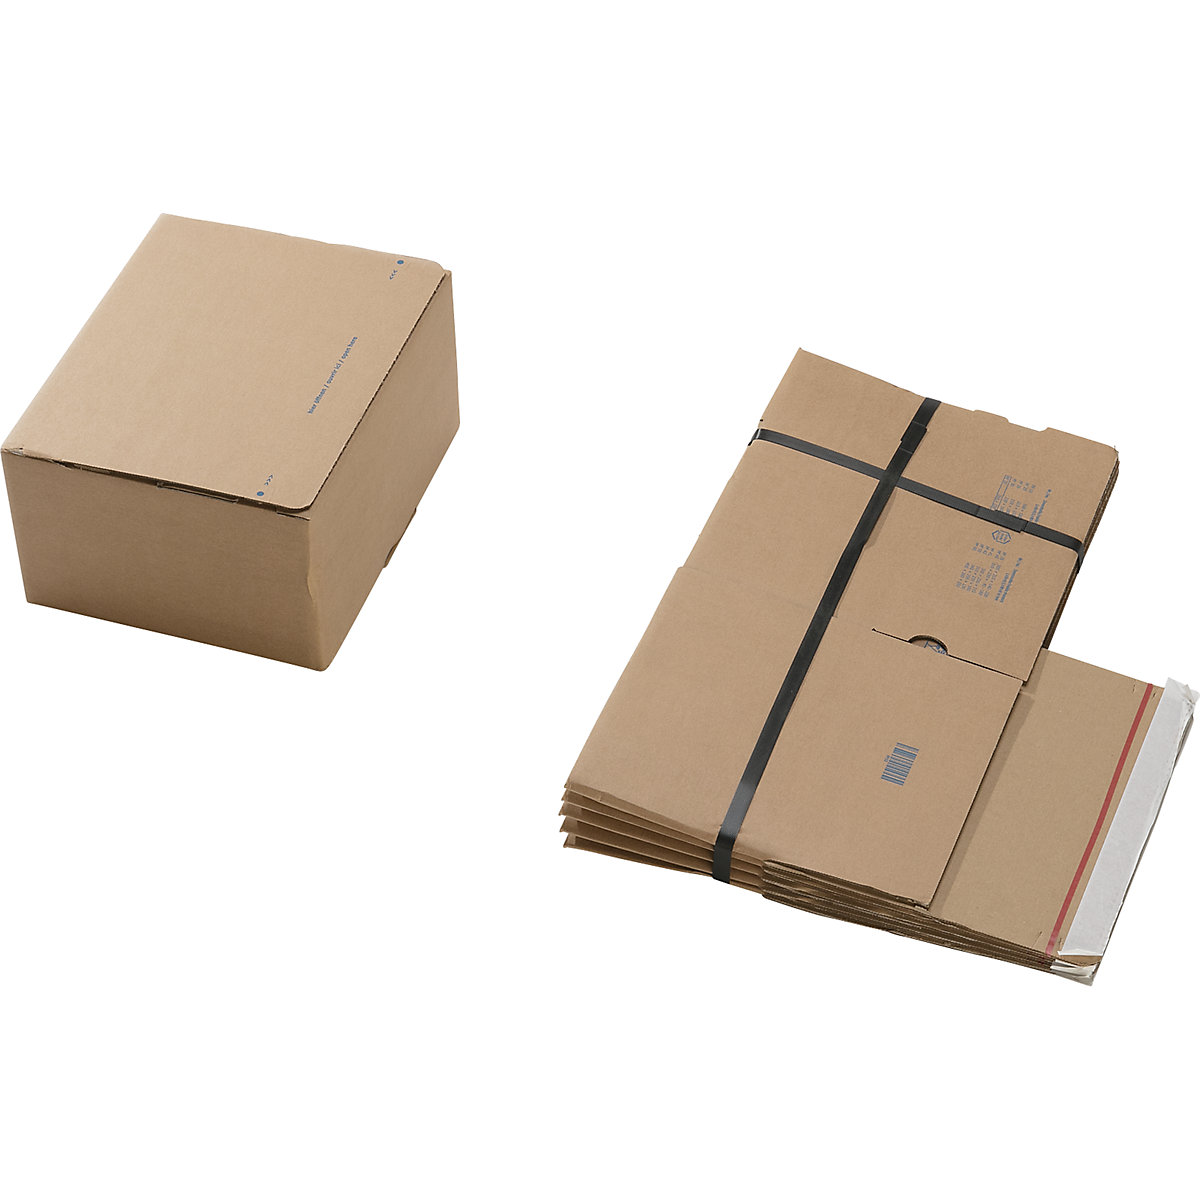 Cajas para envíos, con fondo preparado para montaje rápido y cierre autoadhesivo, dimensiones interiores L x A x H 260 x 220 x 130 mm, UE 100 unid.-2